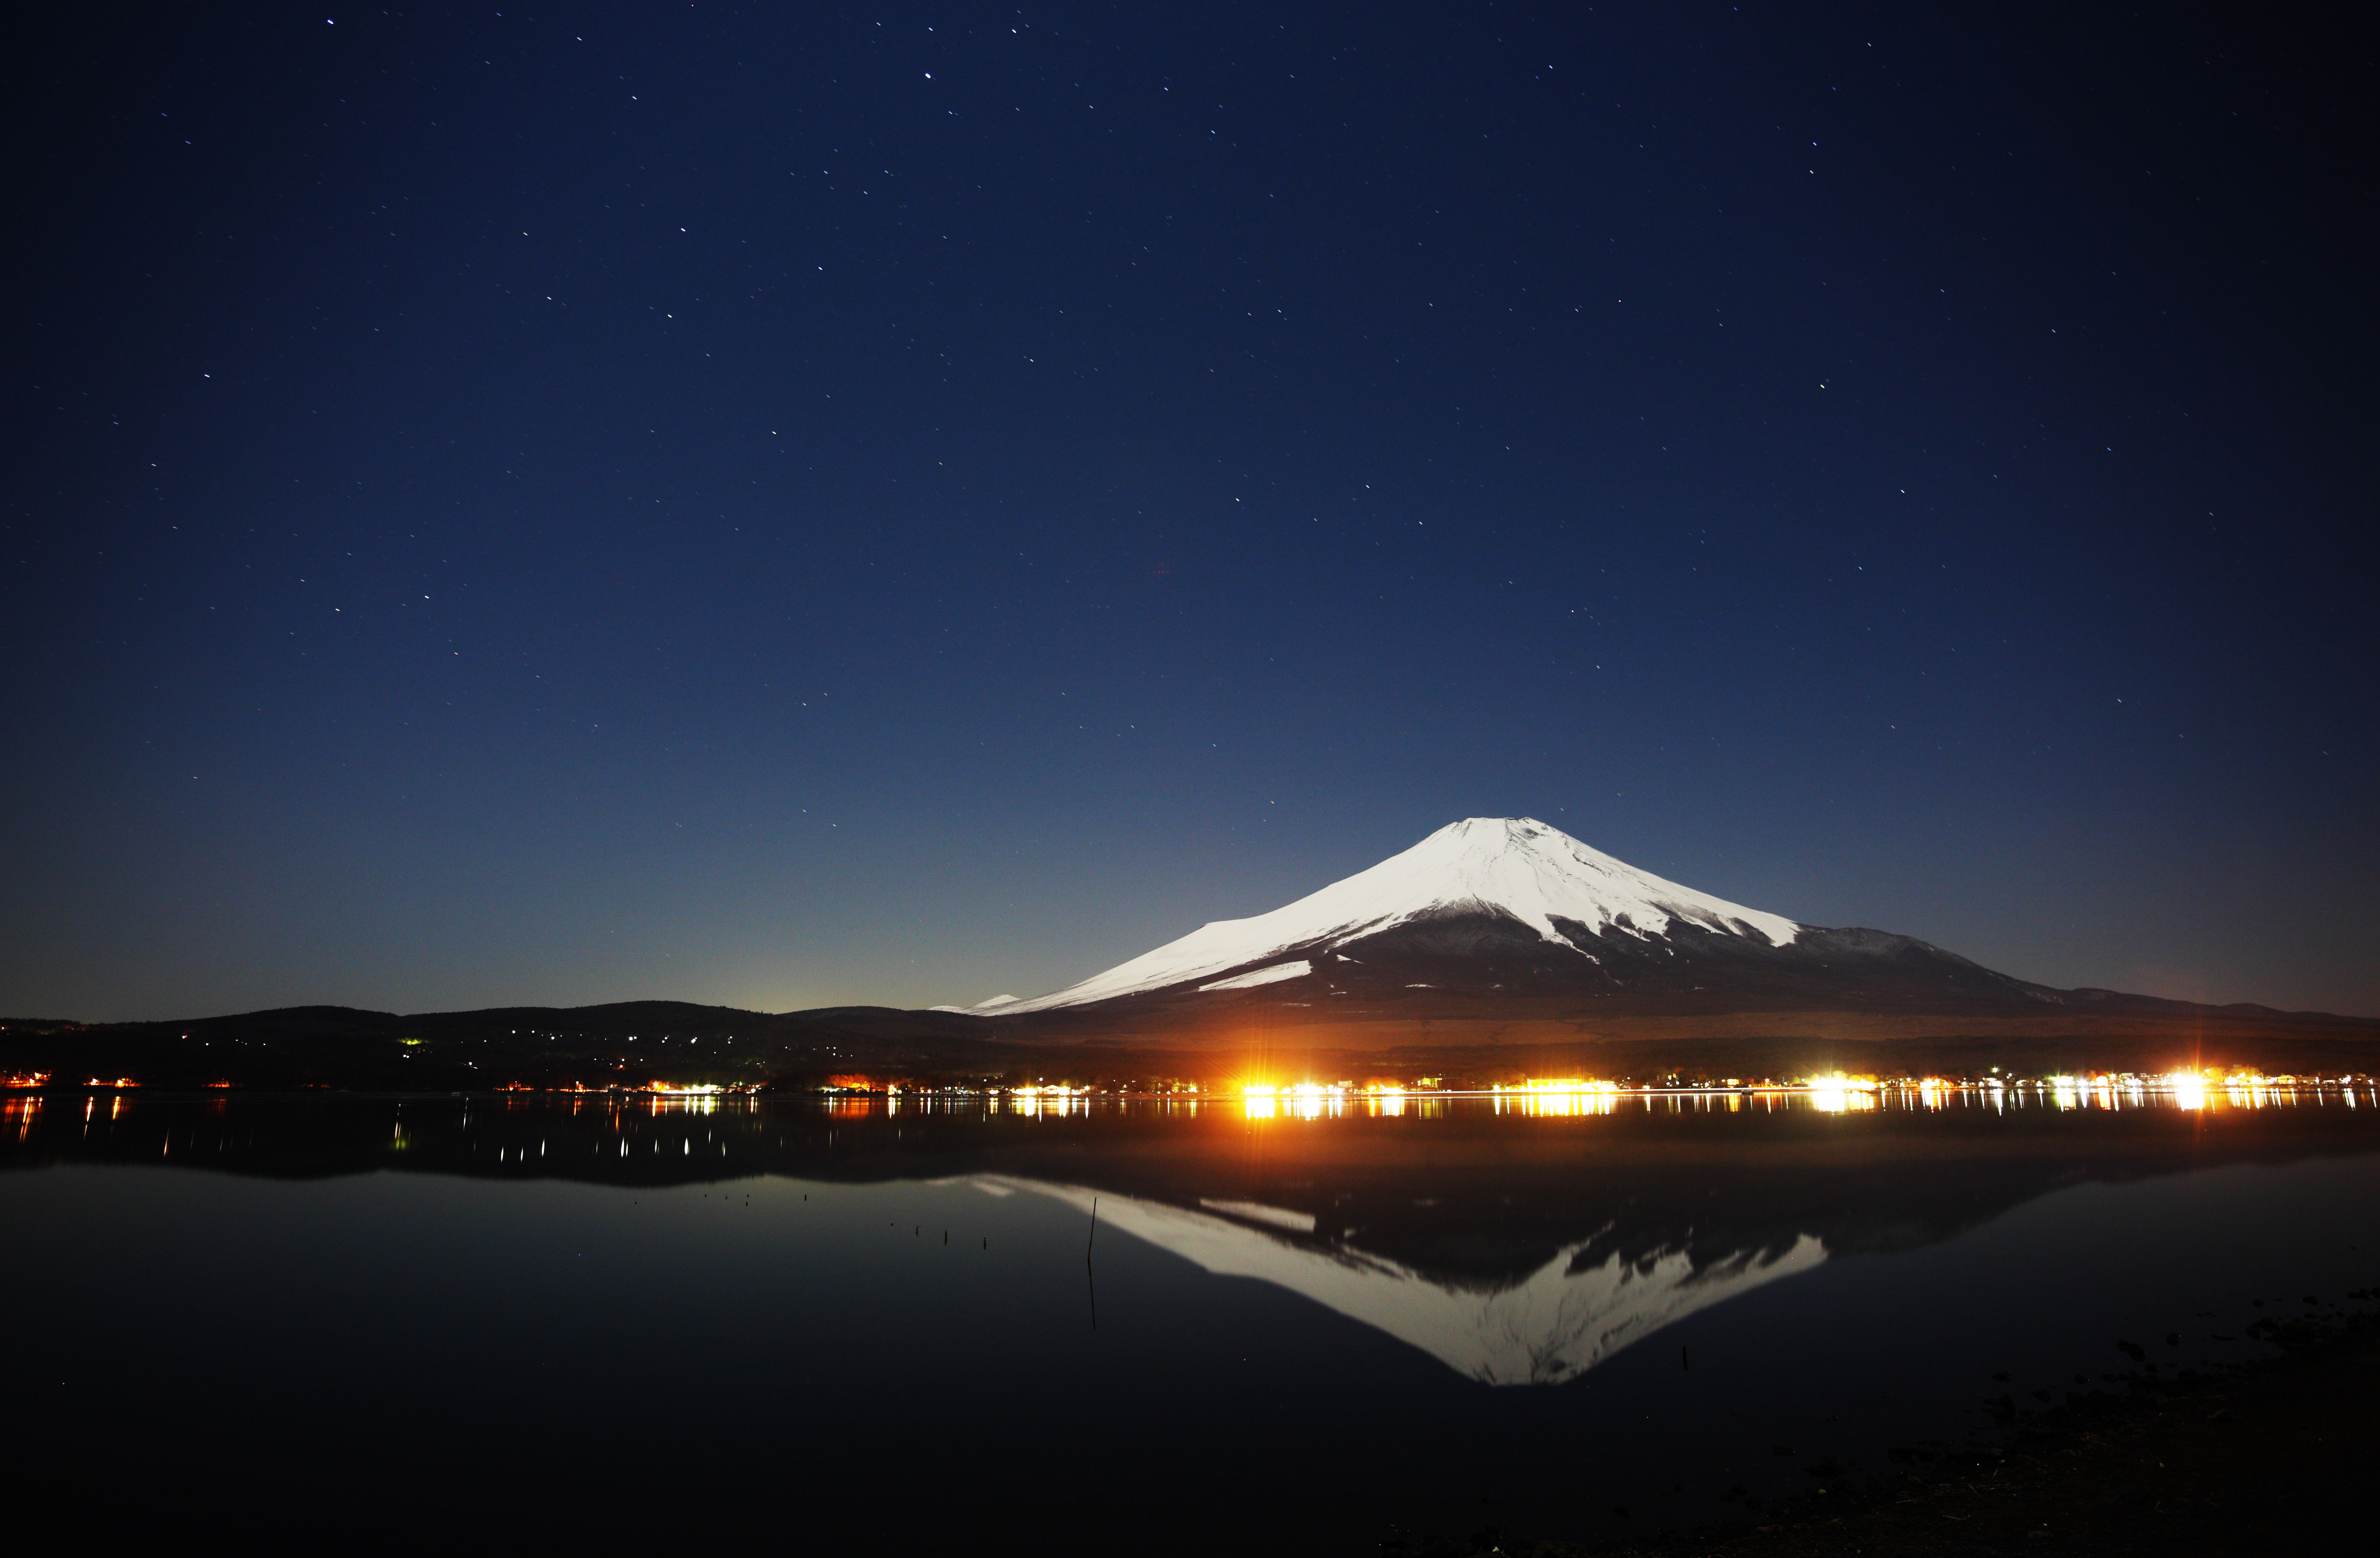 photo, la matire, libre, amnage, dcrivez, photo de la rserve,Mt. Fuji, Fujiyama, Les montagnes neigeuses, surface d'un lac, Ciel toil